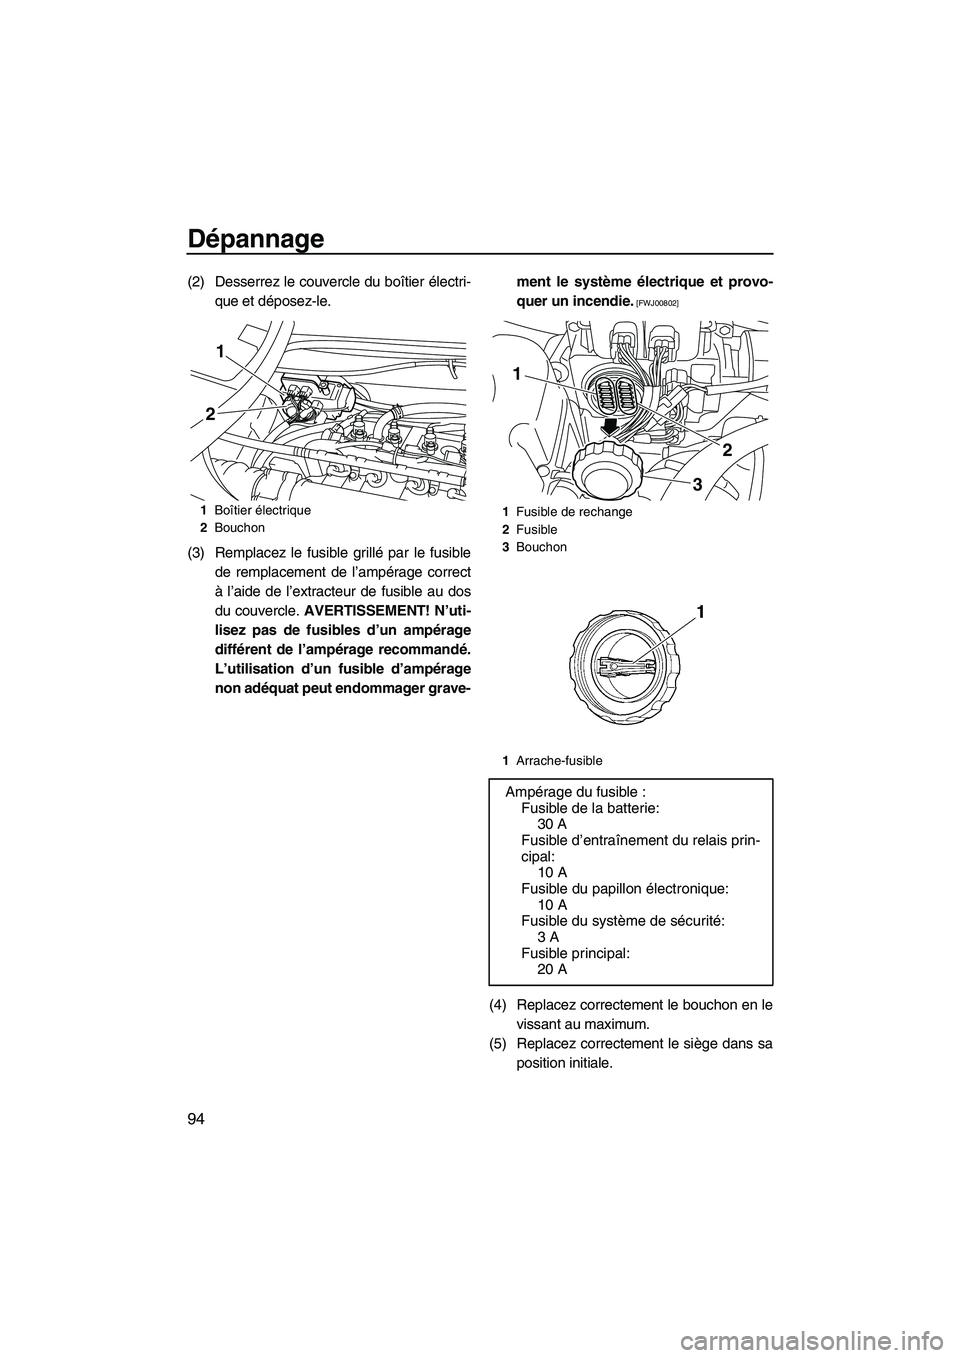 YAMAHA VX SPORT 2010  Notices Demploi (in French) Dépannage
94
(2) Desserrez le couvercle du boîtier électri-
que et déposez-le.
(3) Remplacez le fusible grillé par le fusible
de remplacement de l’ampérage correct
à l’aide de l’extracteu